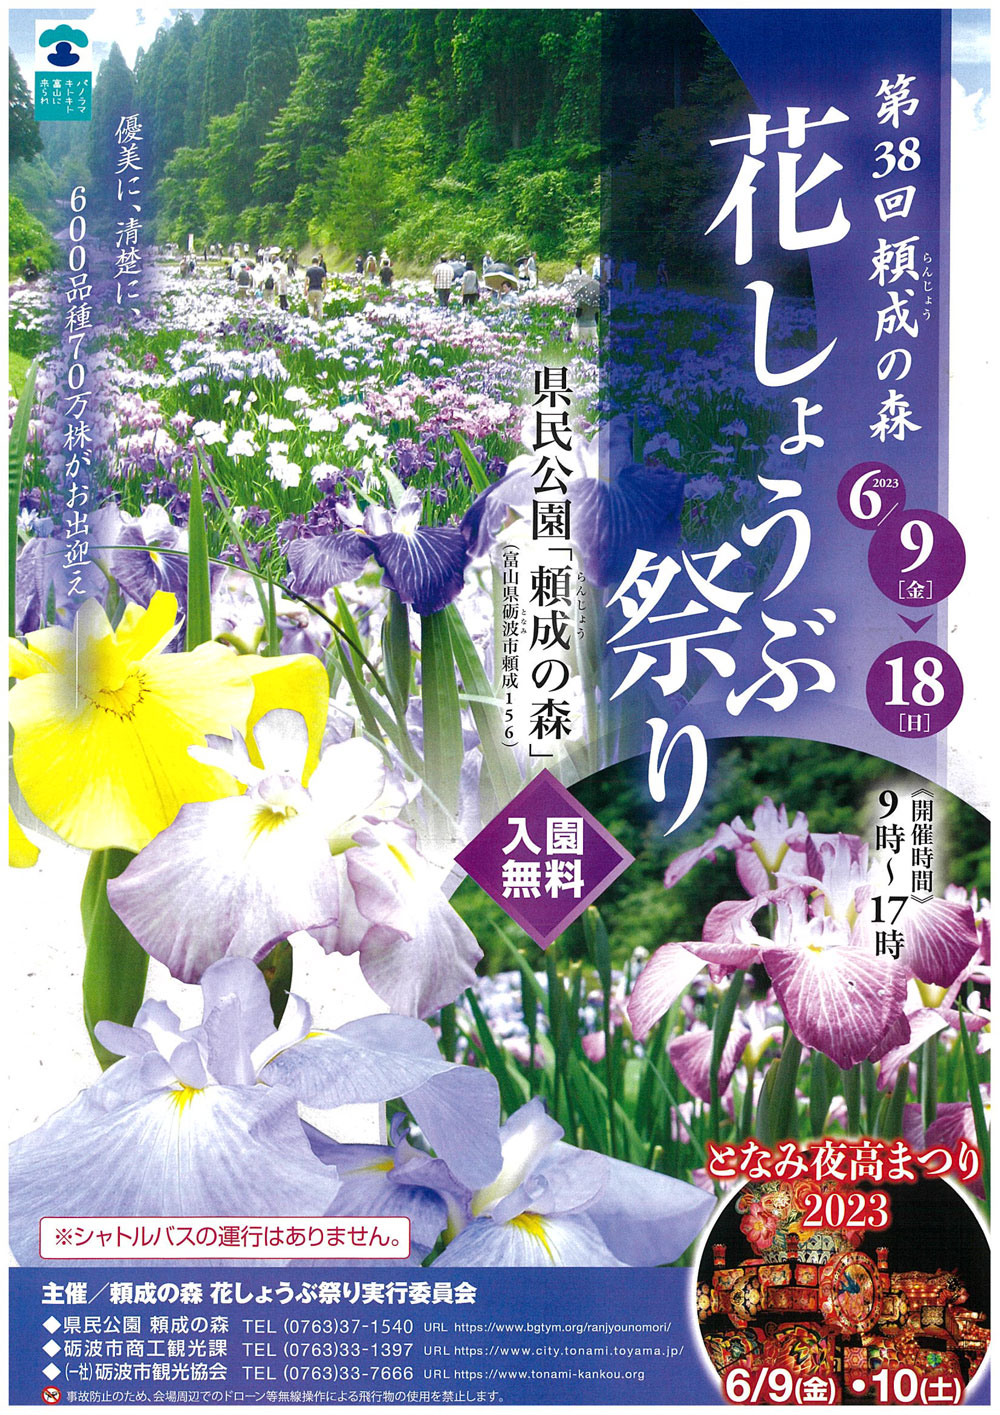 富山県砺波市の「頼成の森 花しょうぶ祭り2023」のチラシ